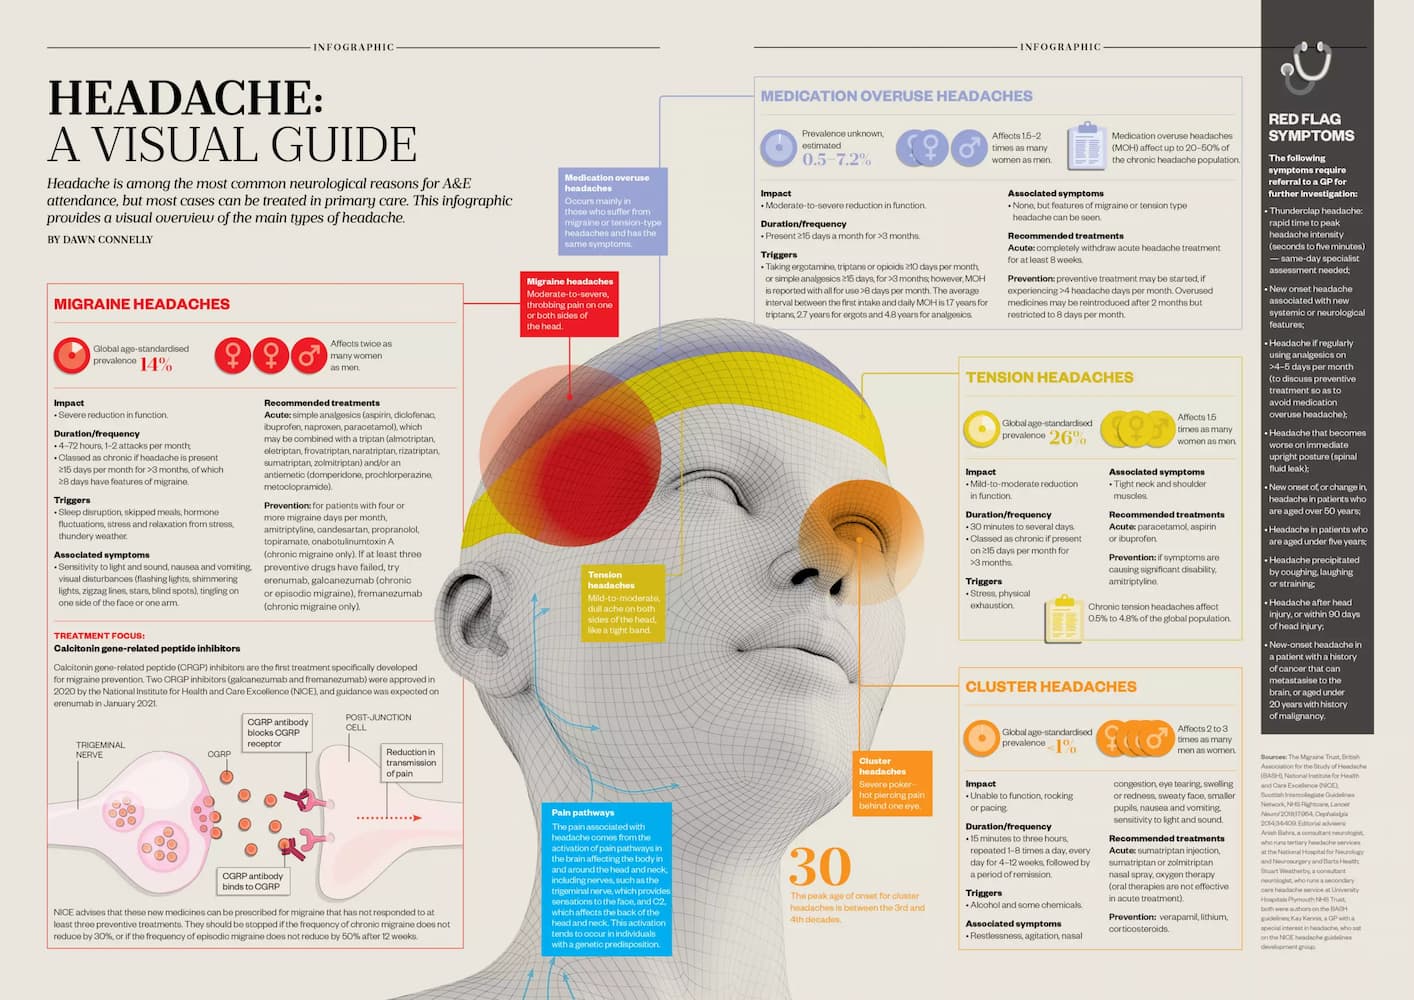 What is headache?